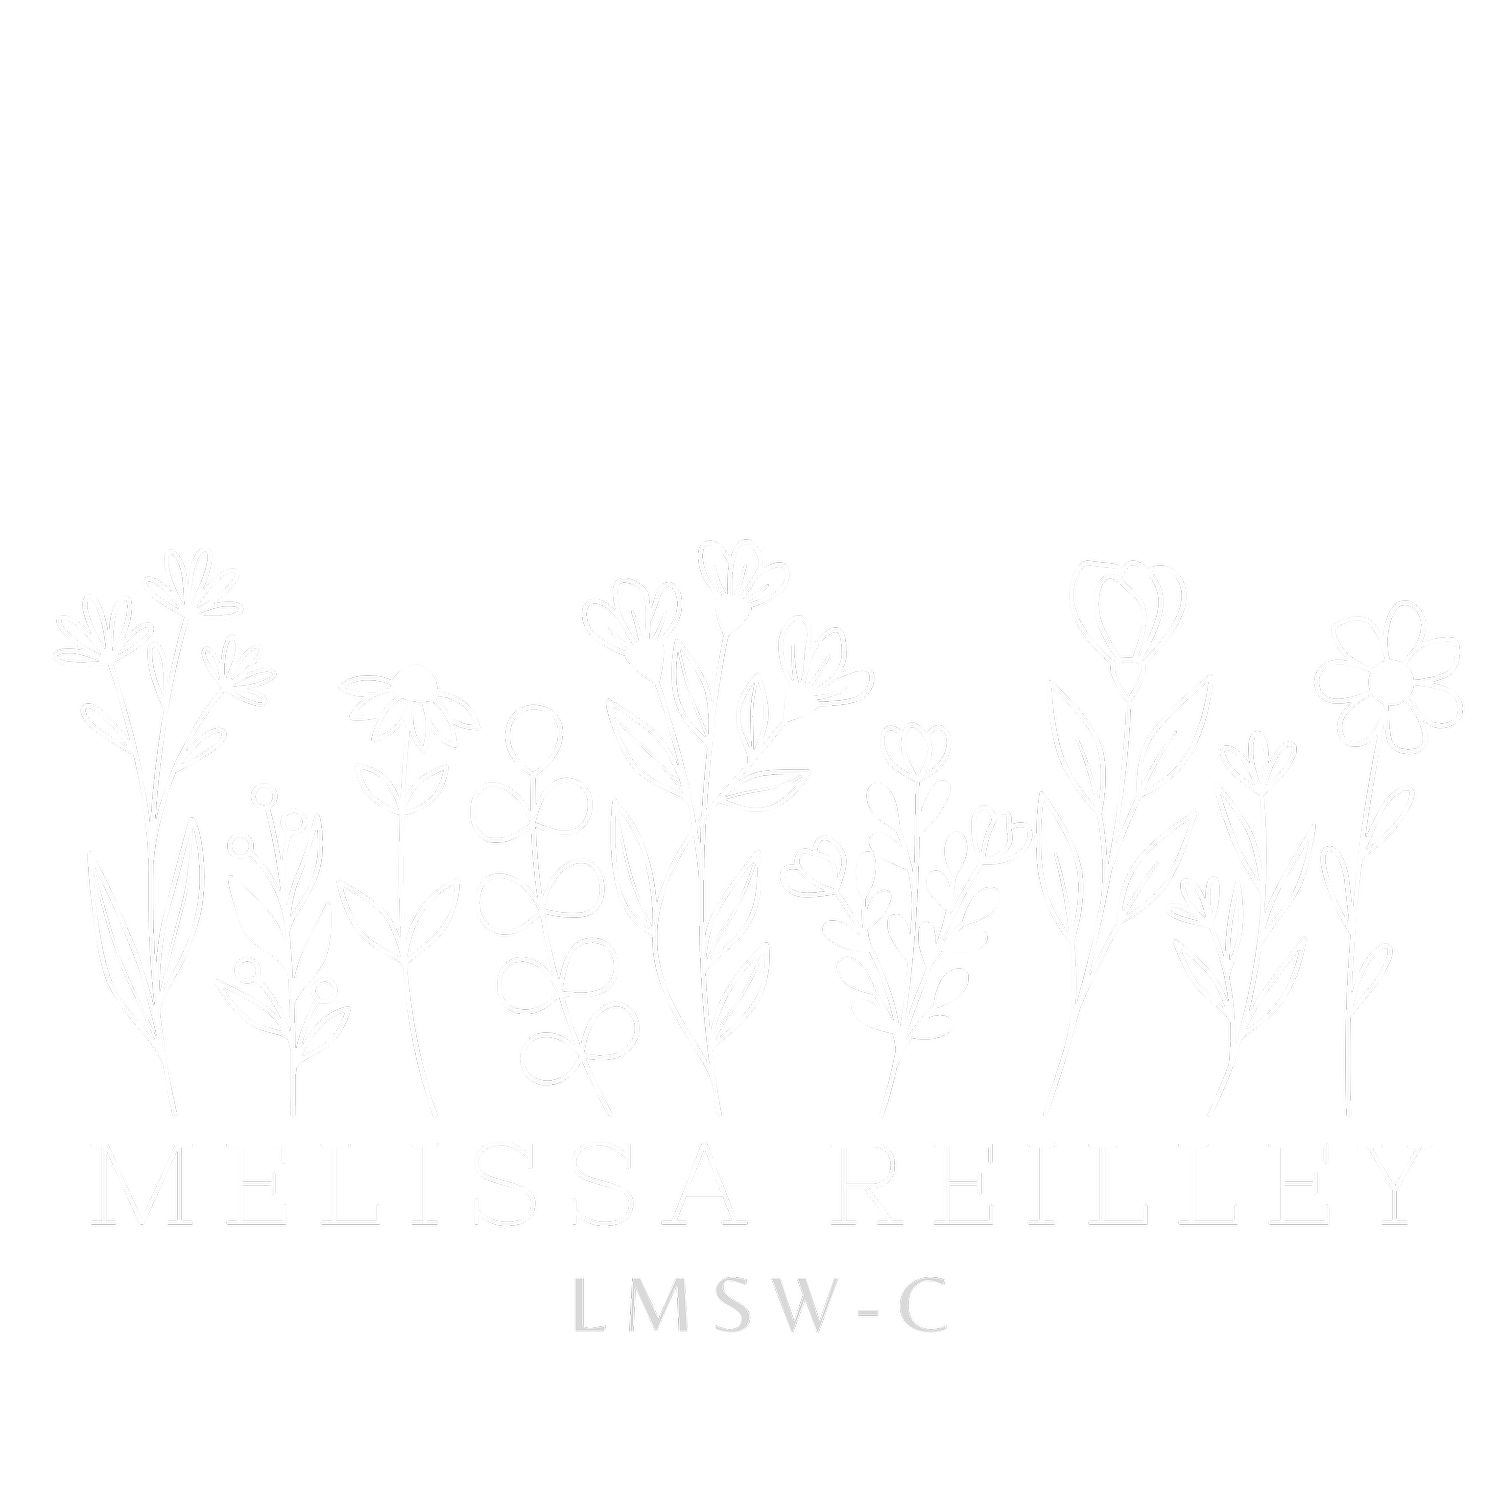 Melissa Reilley, LMSW-C